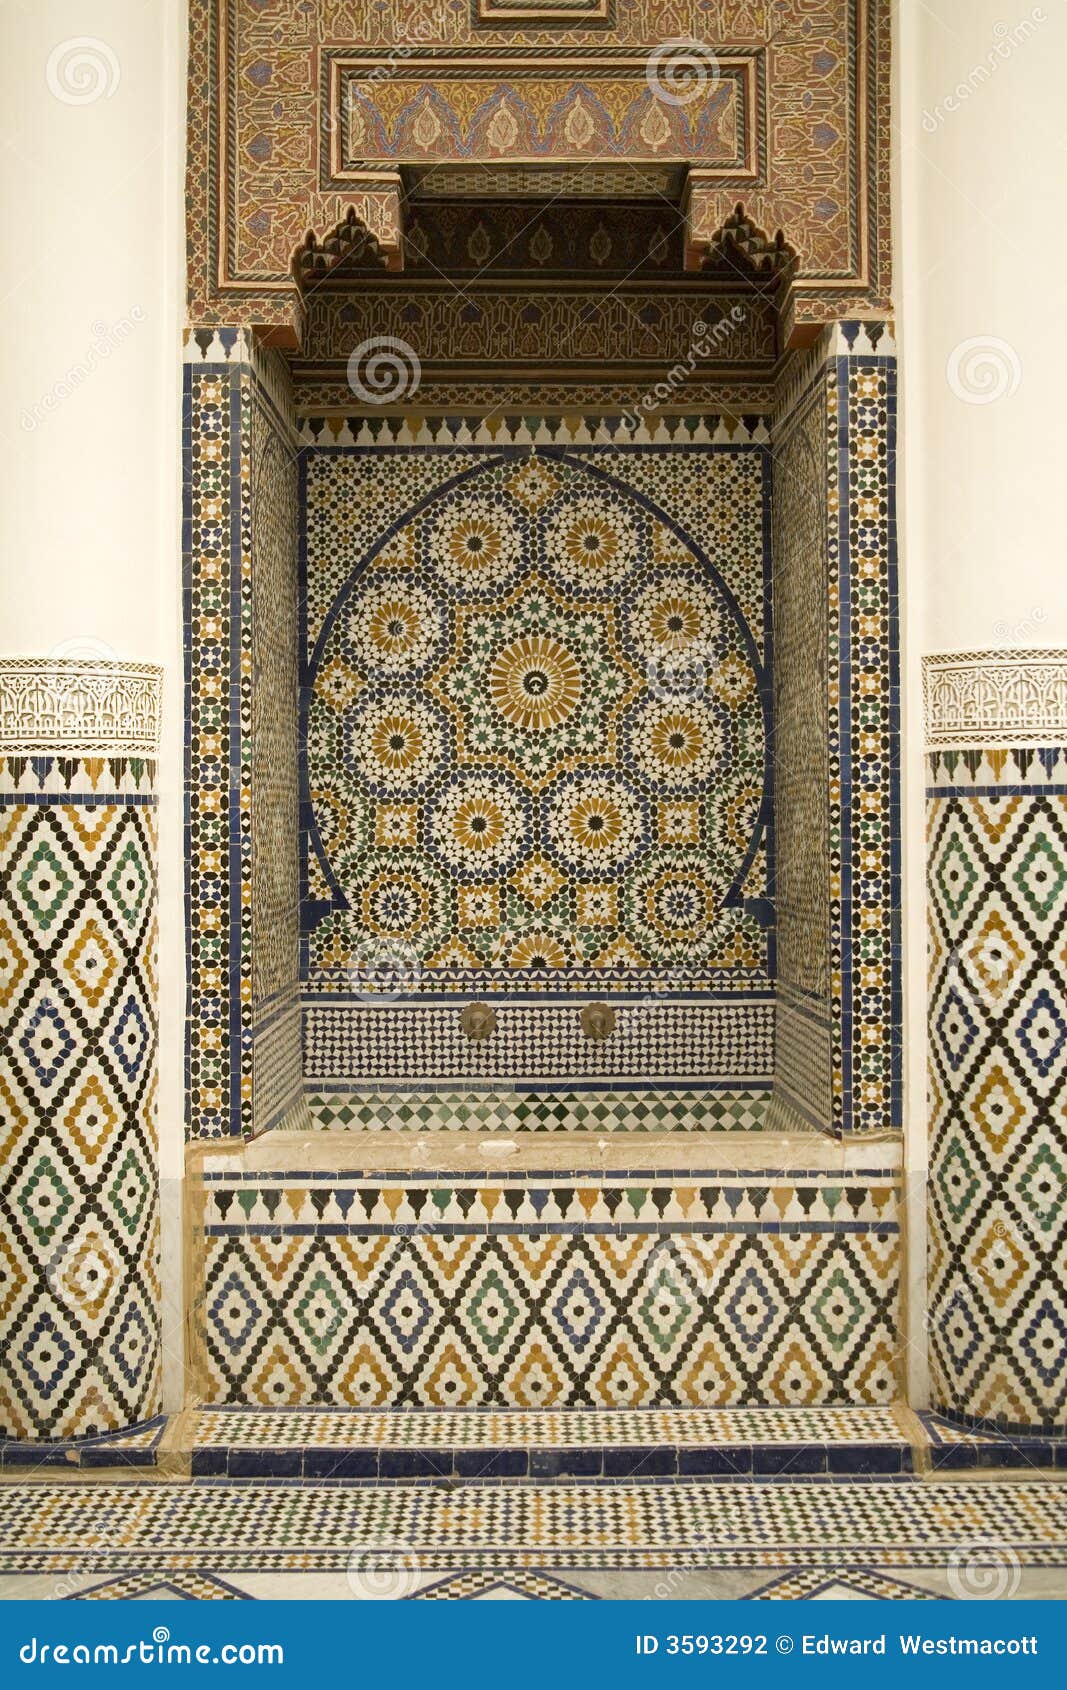 Sobre dioses, el rincon y artesanos del monton. - Página 8 Arabic-mosaic-decorations-3593292